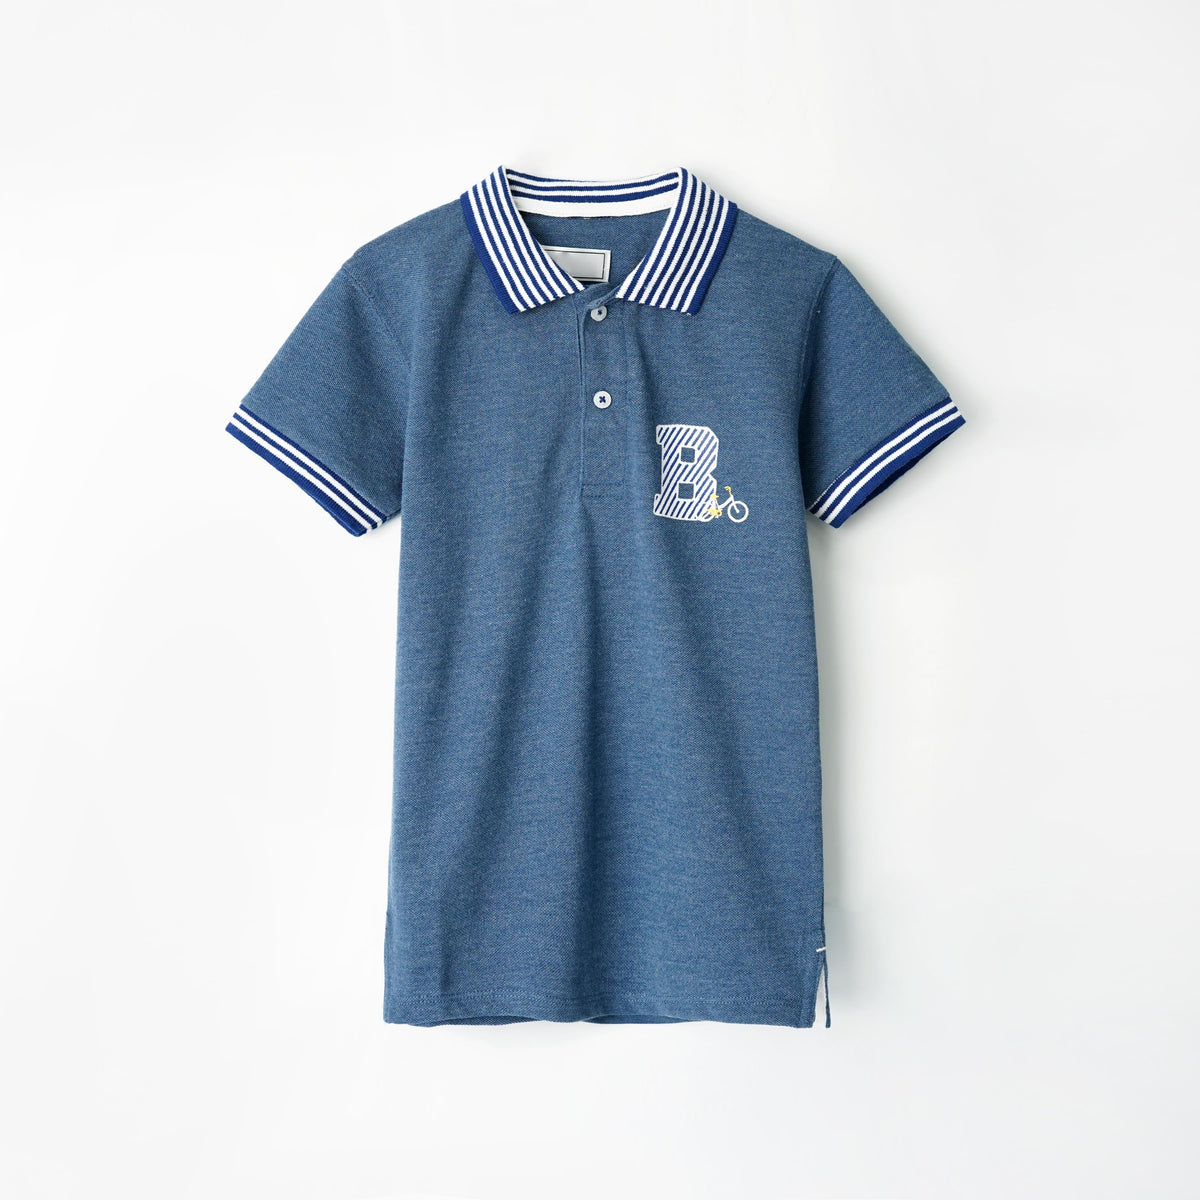 Boys Soft Cotton Printed Pique Polo Shirt